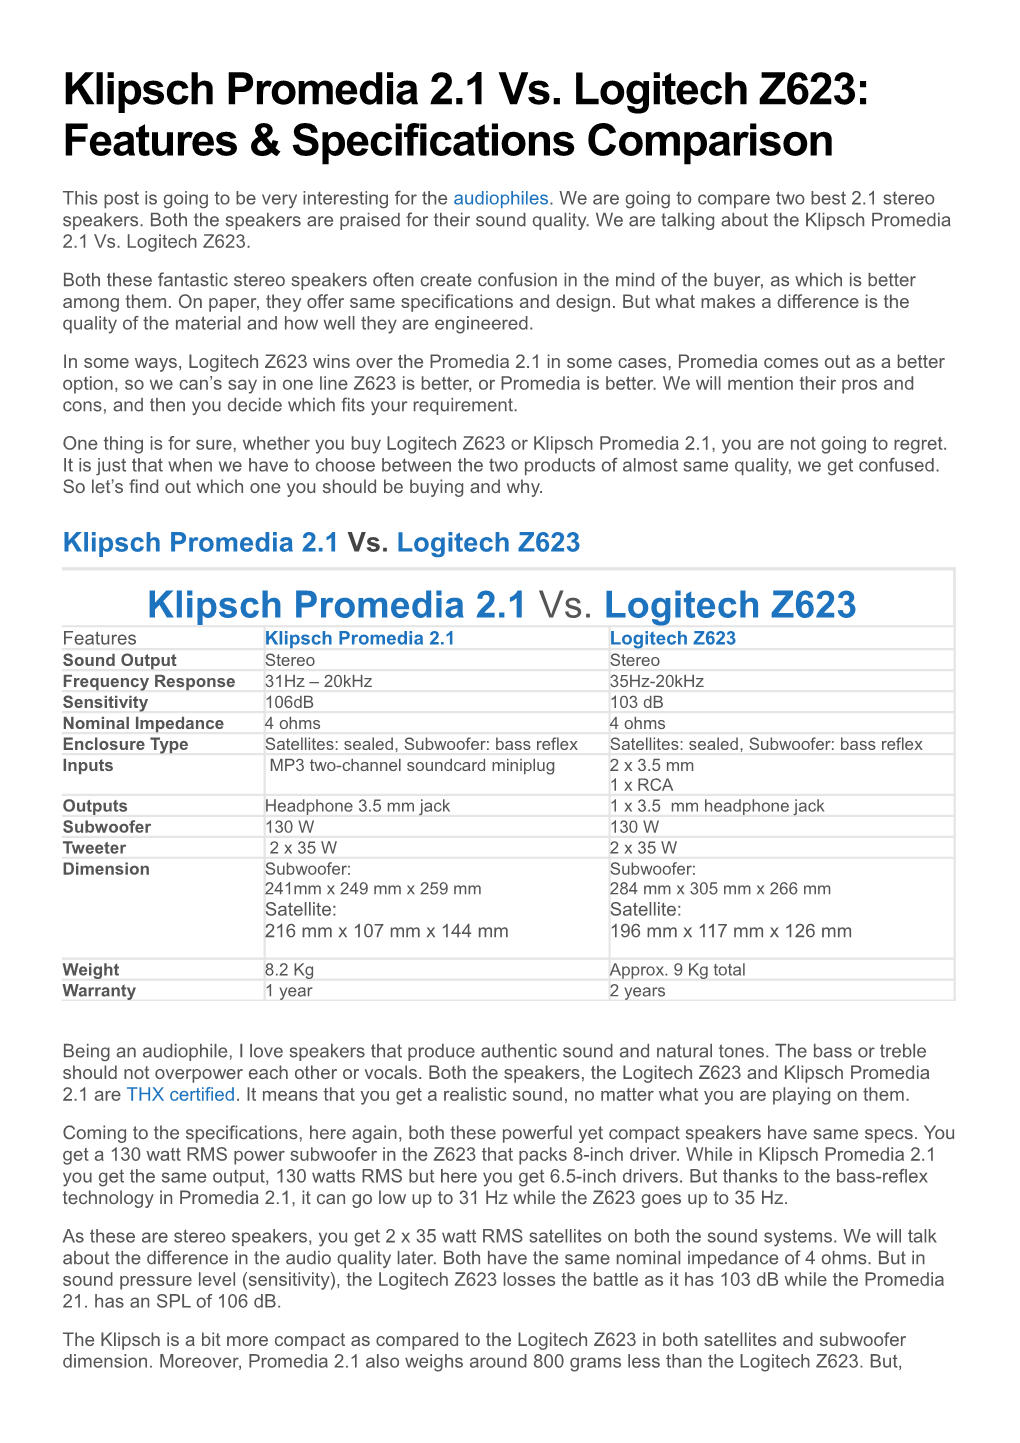 Klipsch Promedia 2.1 Vs. Logitech Z623 Features & Specifications Comparison